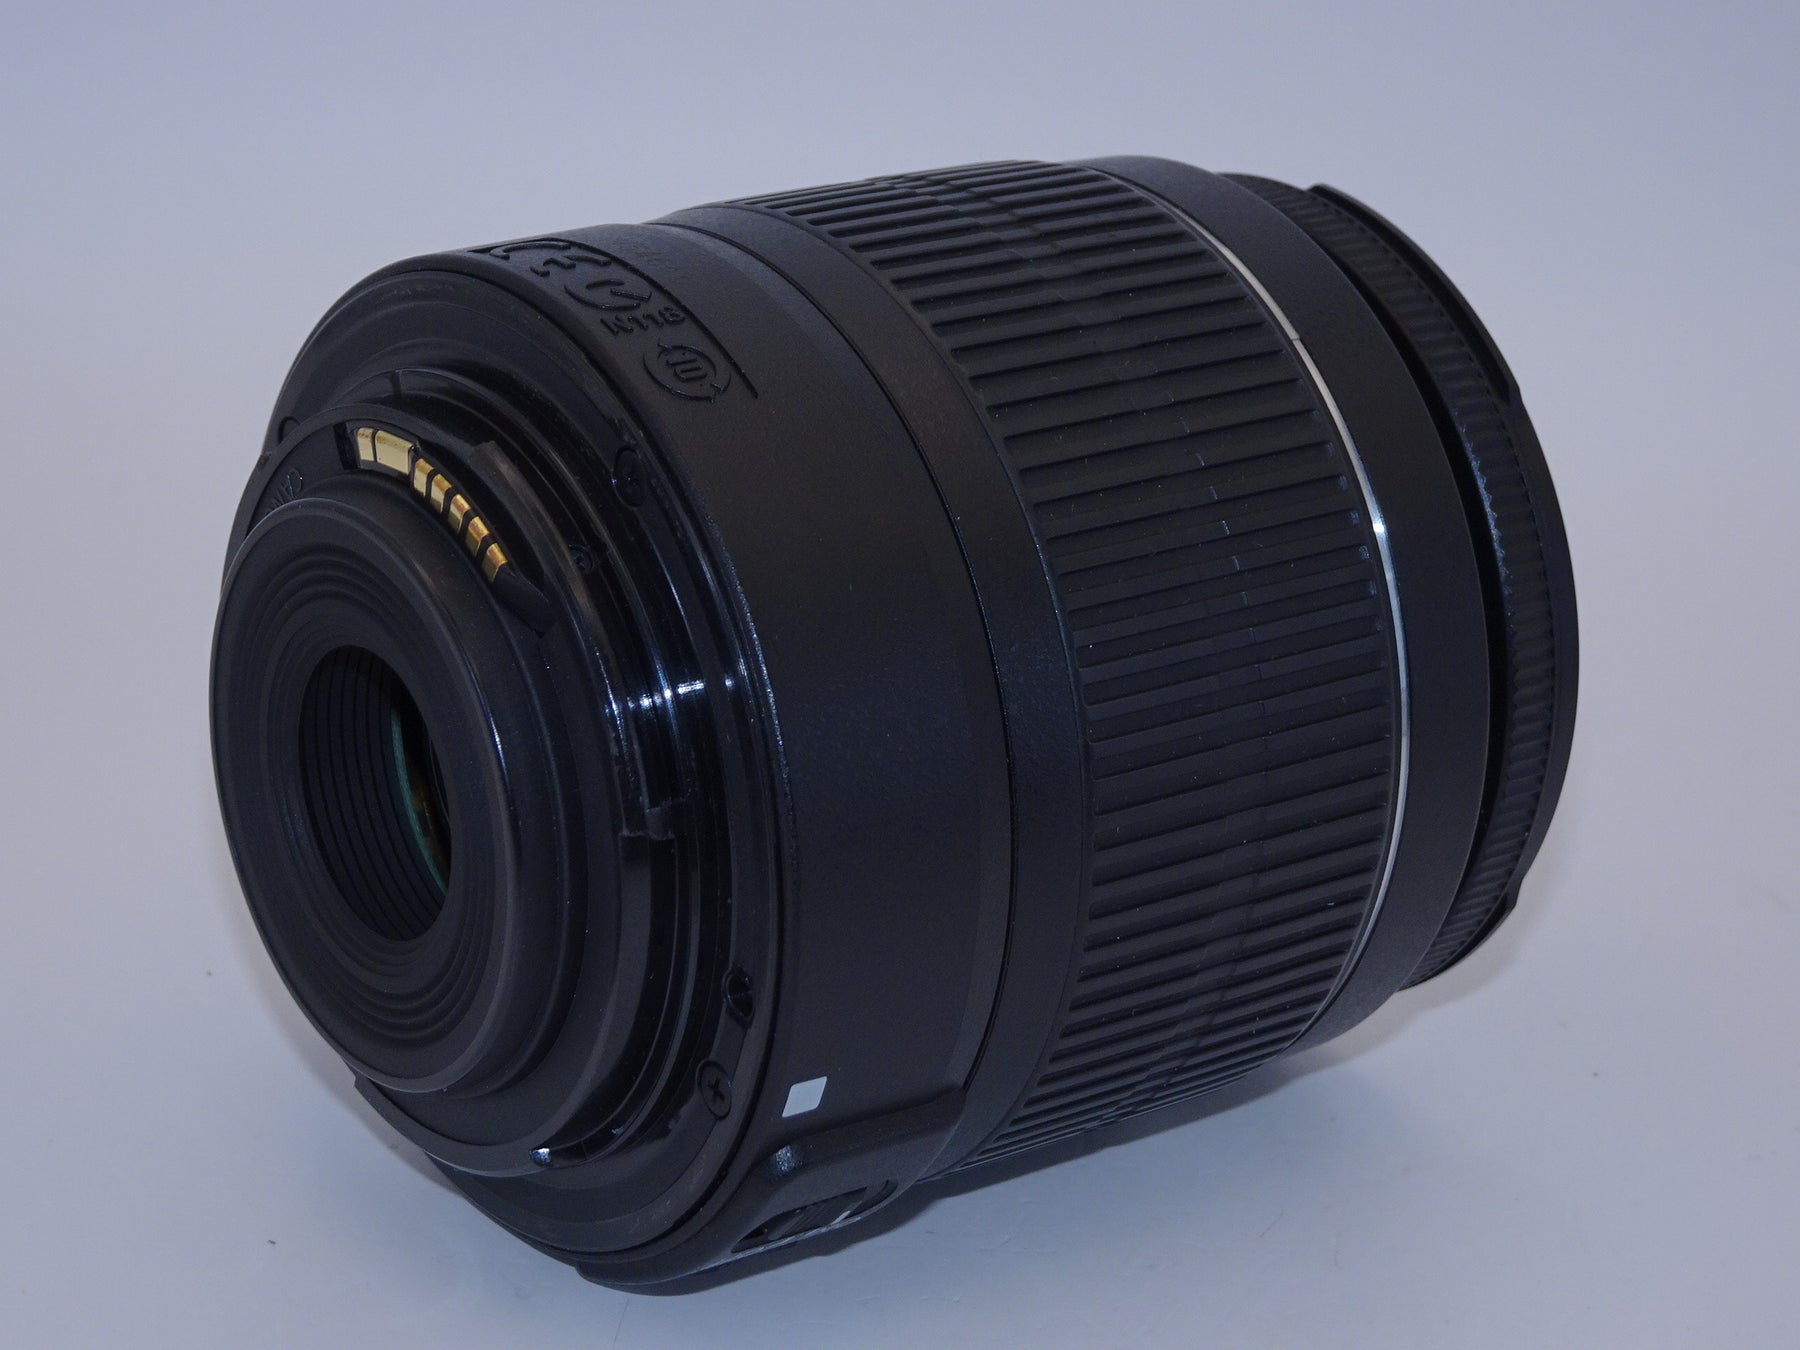 【外観特上級】Canon 標準ズームレンズ EF-S18-55mm F3.5-.5.6 IS II